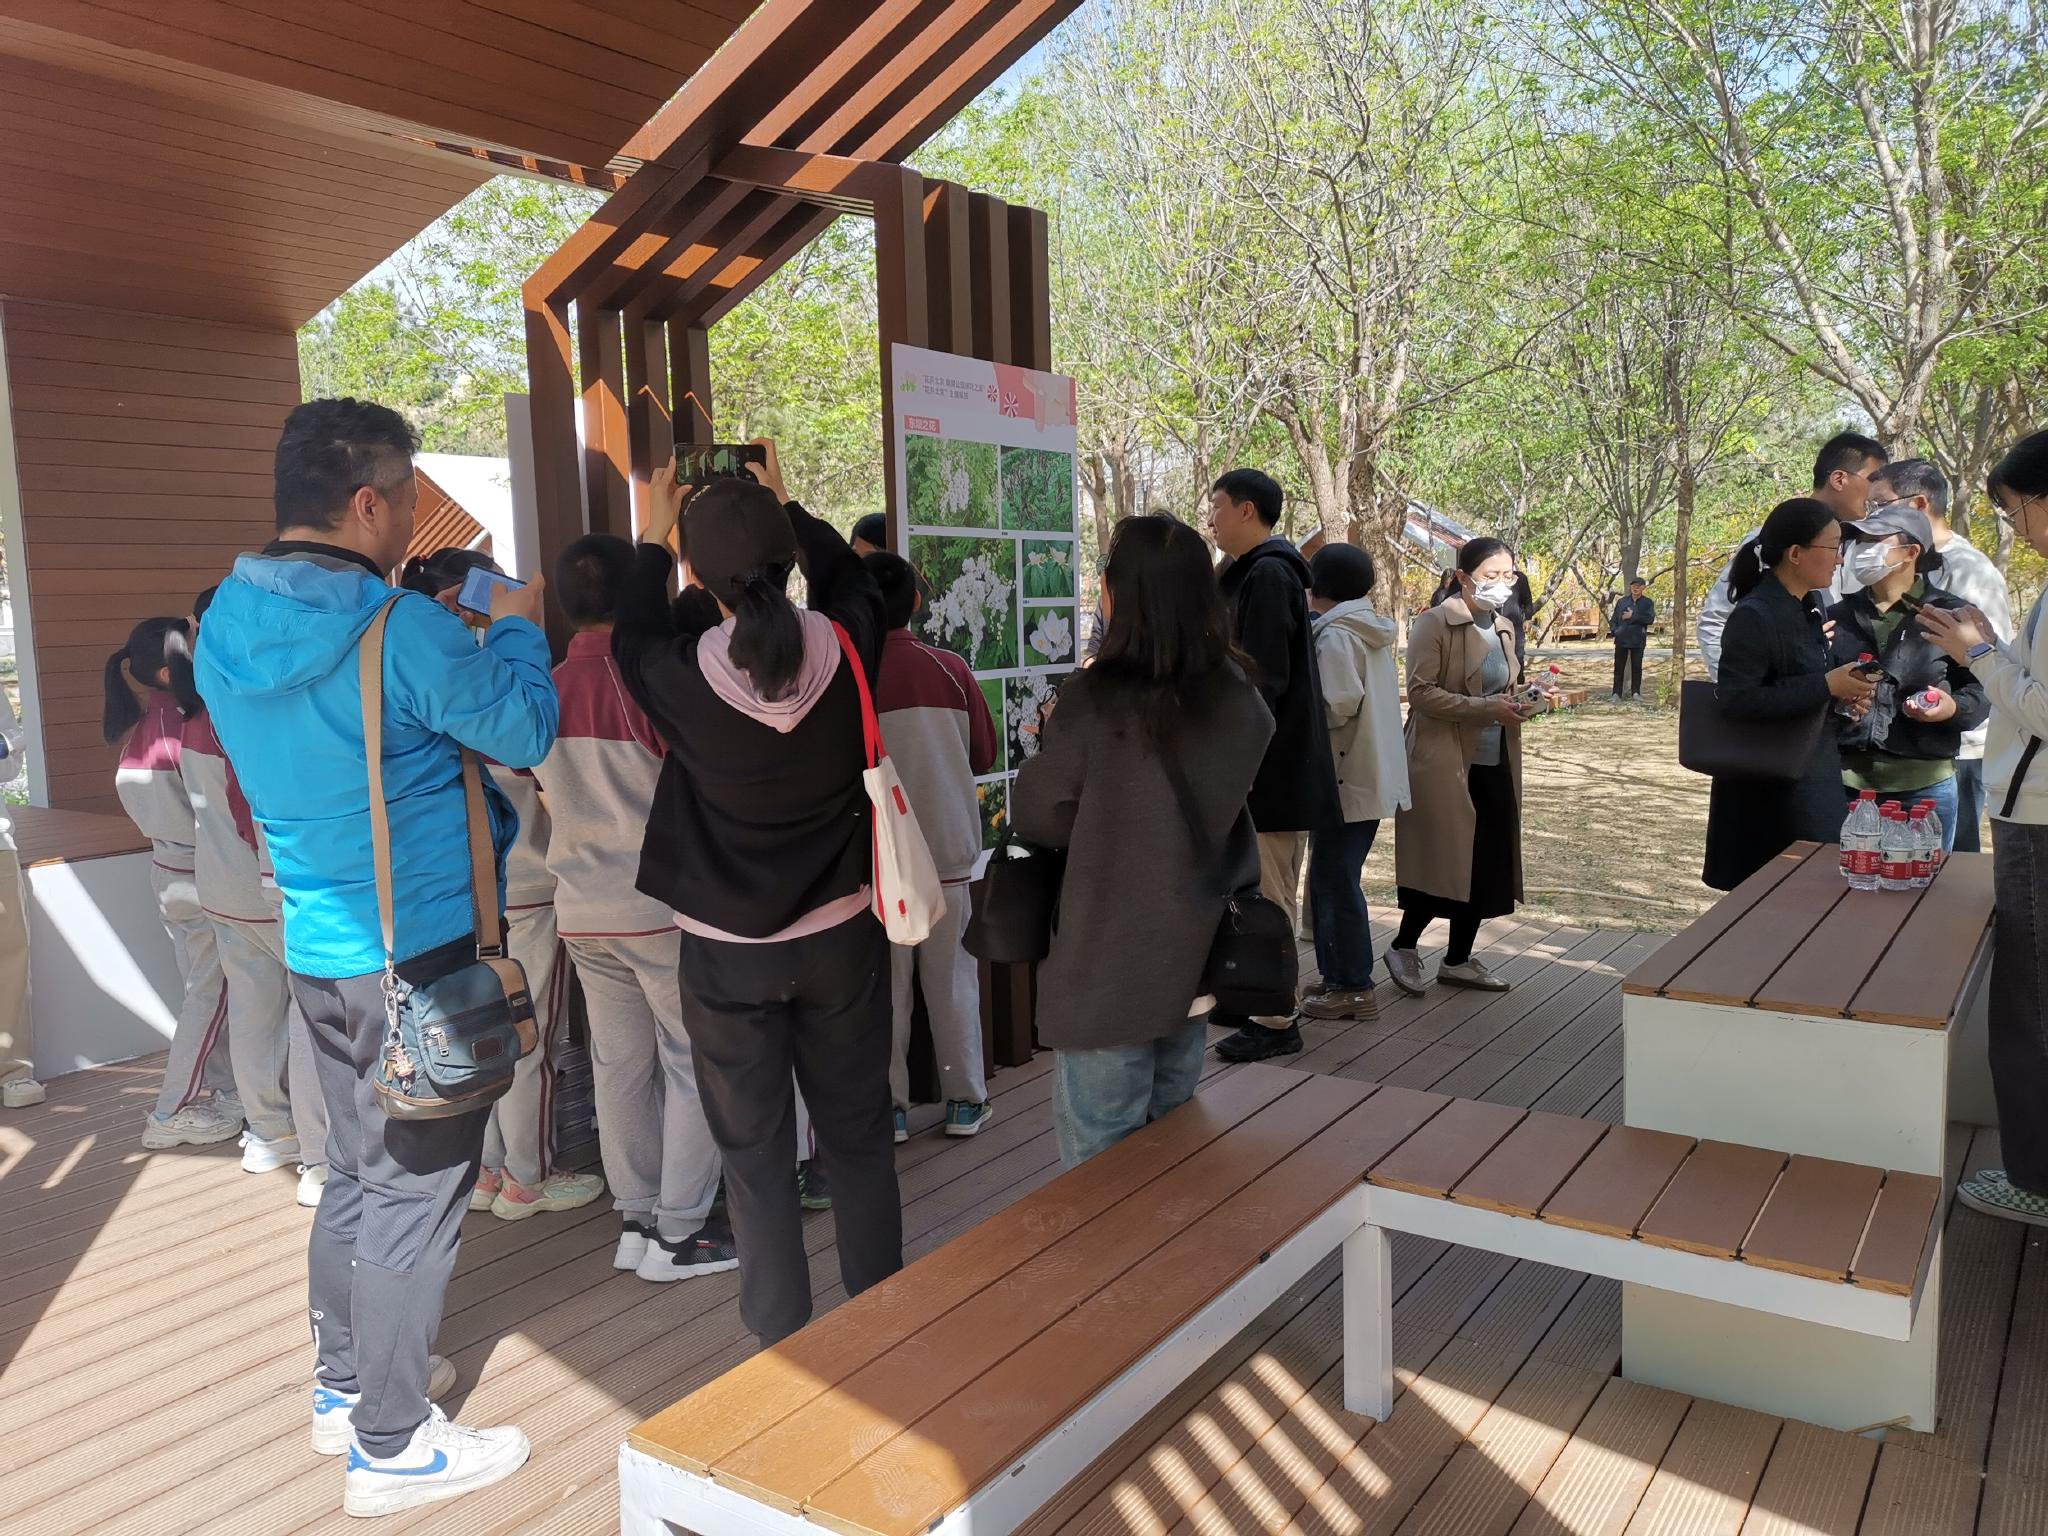 市民遊客在東壩公園內的林中書屋觀看展覽。  新京報記者 張璐 攝